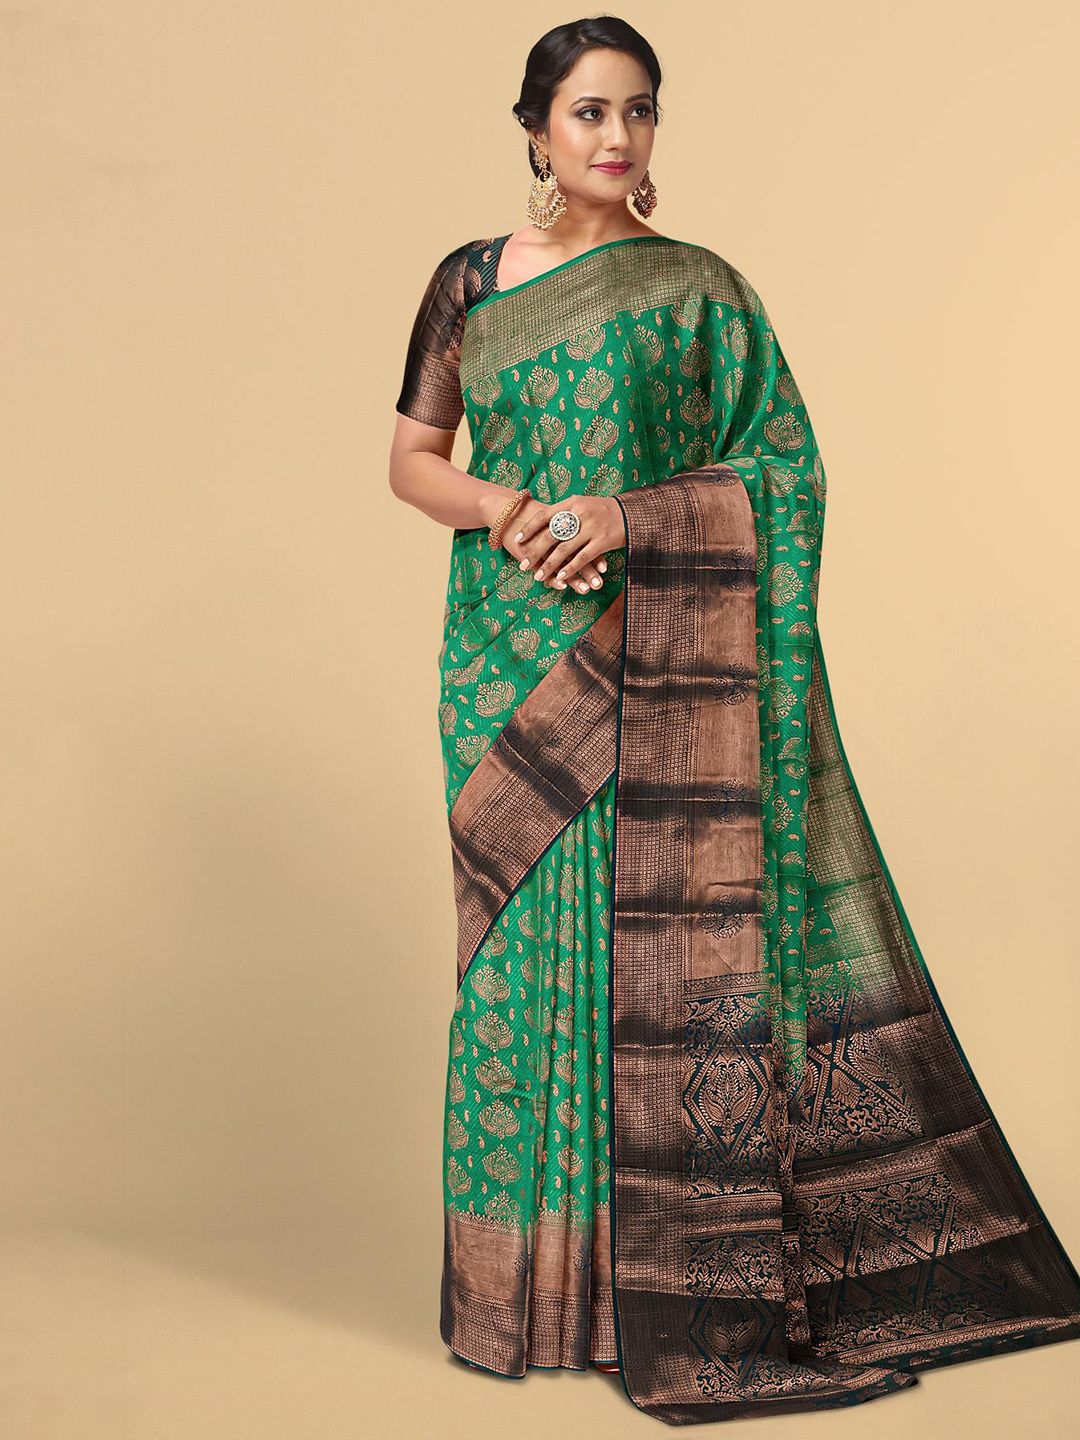 Kalamandir Green & Black Woven Design Silk Blend Saree Price in India